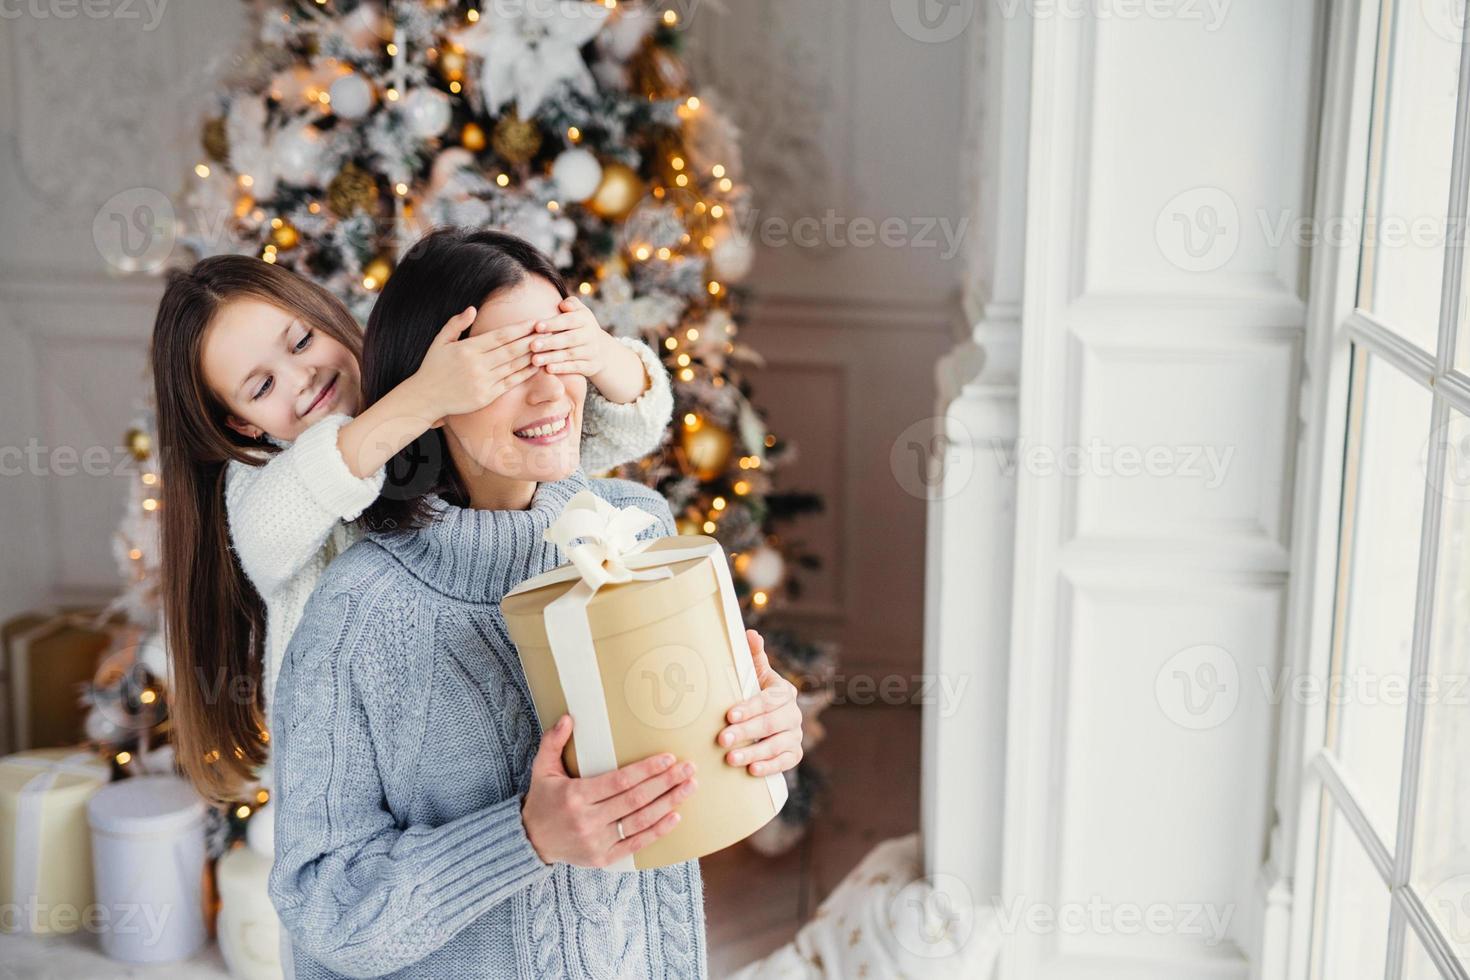 il ritratto della bambina chiude gli occhi della madre, si congratula con lei per il nuovo anno o il Natale, sta vicino alla finestra nel soggiorno, ha un vero miracolo e una sensazione di vacanza. inverno, festa, stagione foto